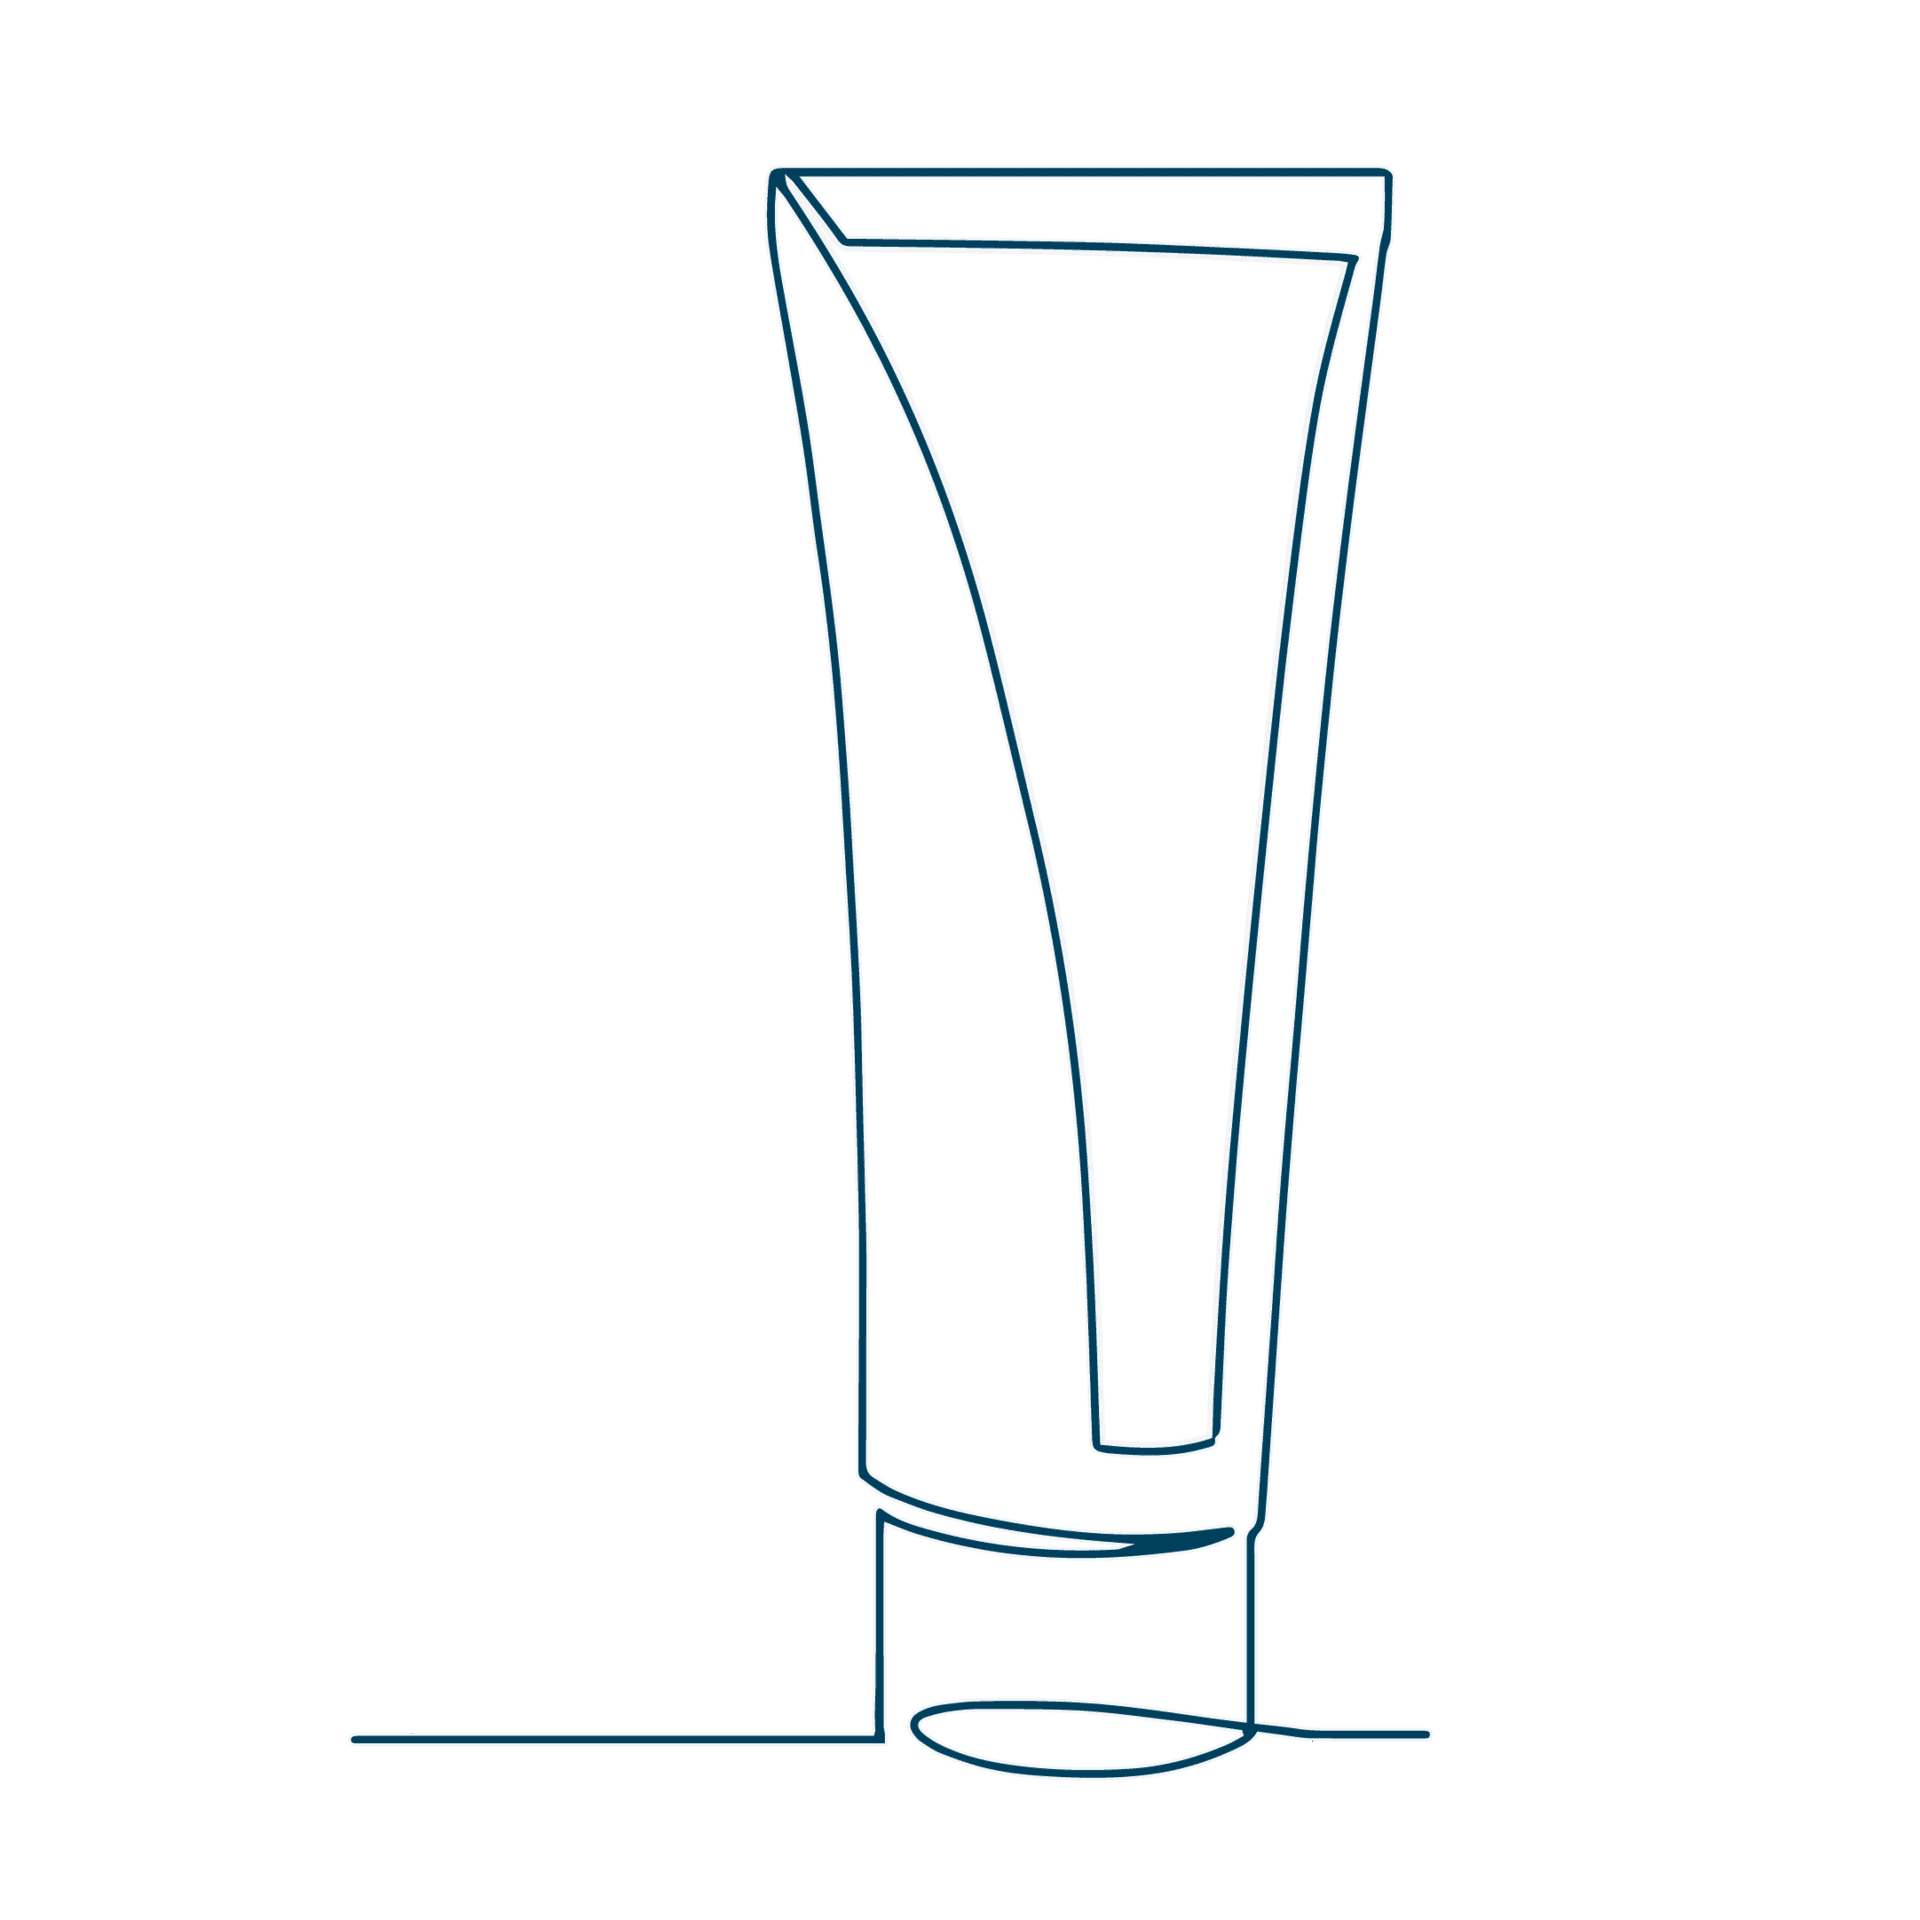 Diese Line-Art-Zeichnung einer Tube steht für den ersten Verkaufsschlager, den Sixtus Fußbalsam.